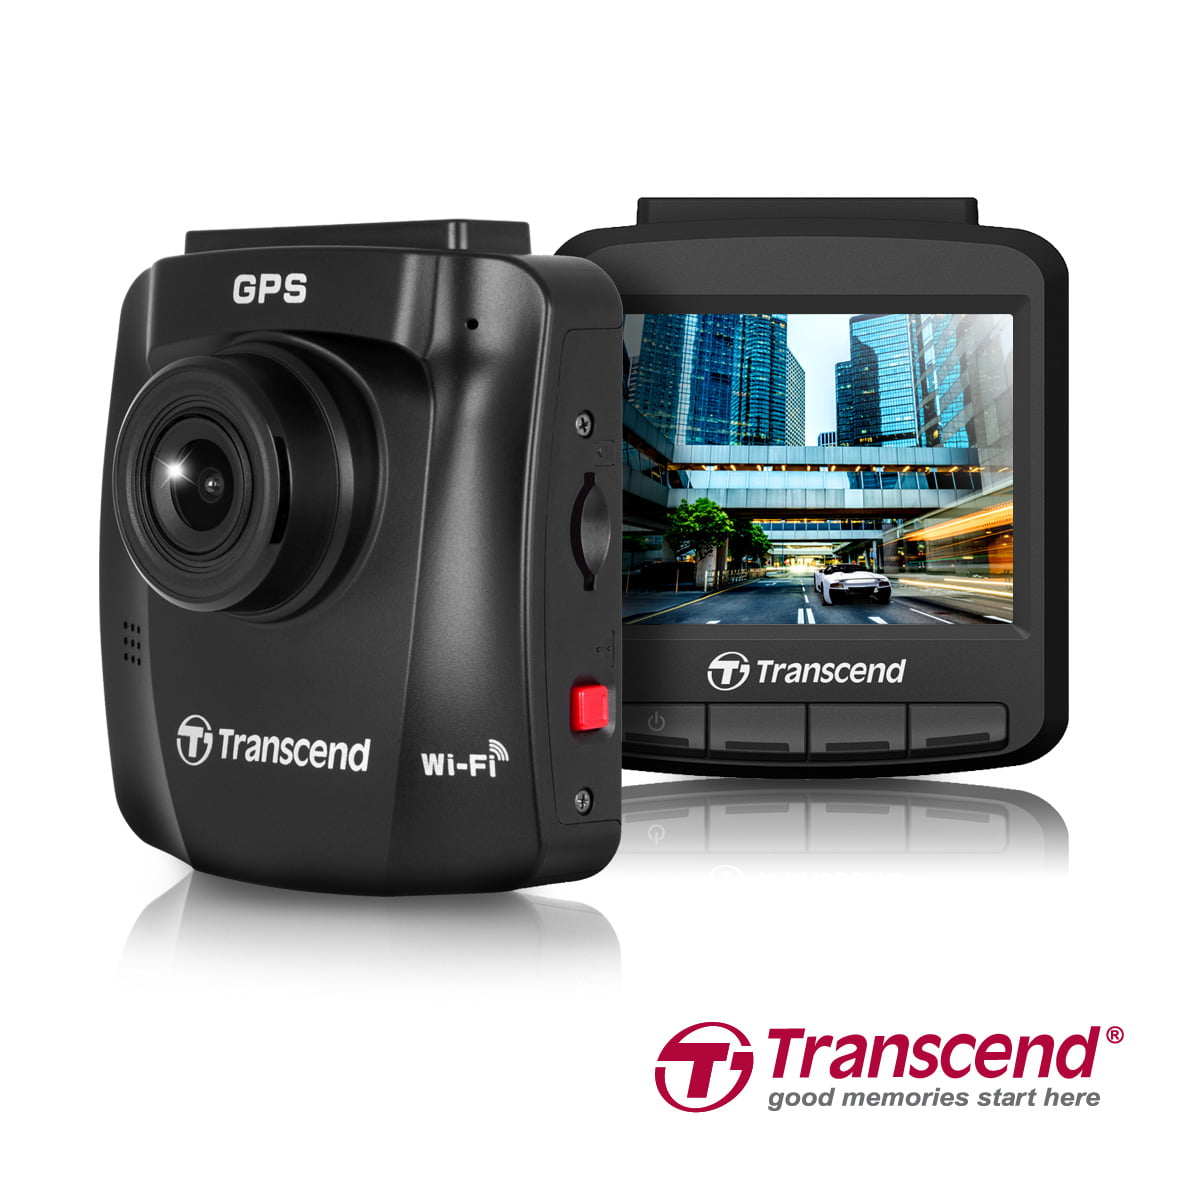 La DrivePro 230 Dashcam Transcend offre agli utenti sicurezza e stile. 1